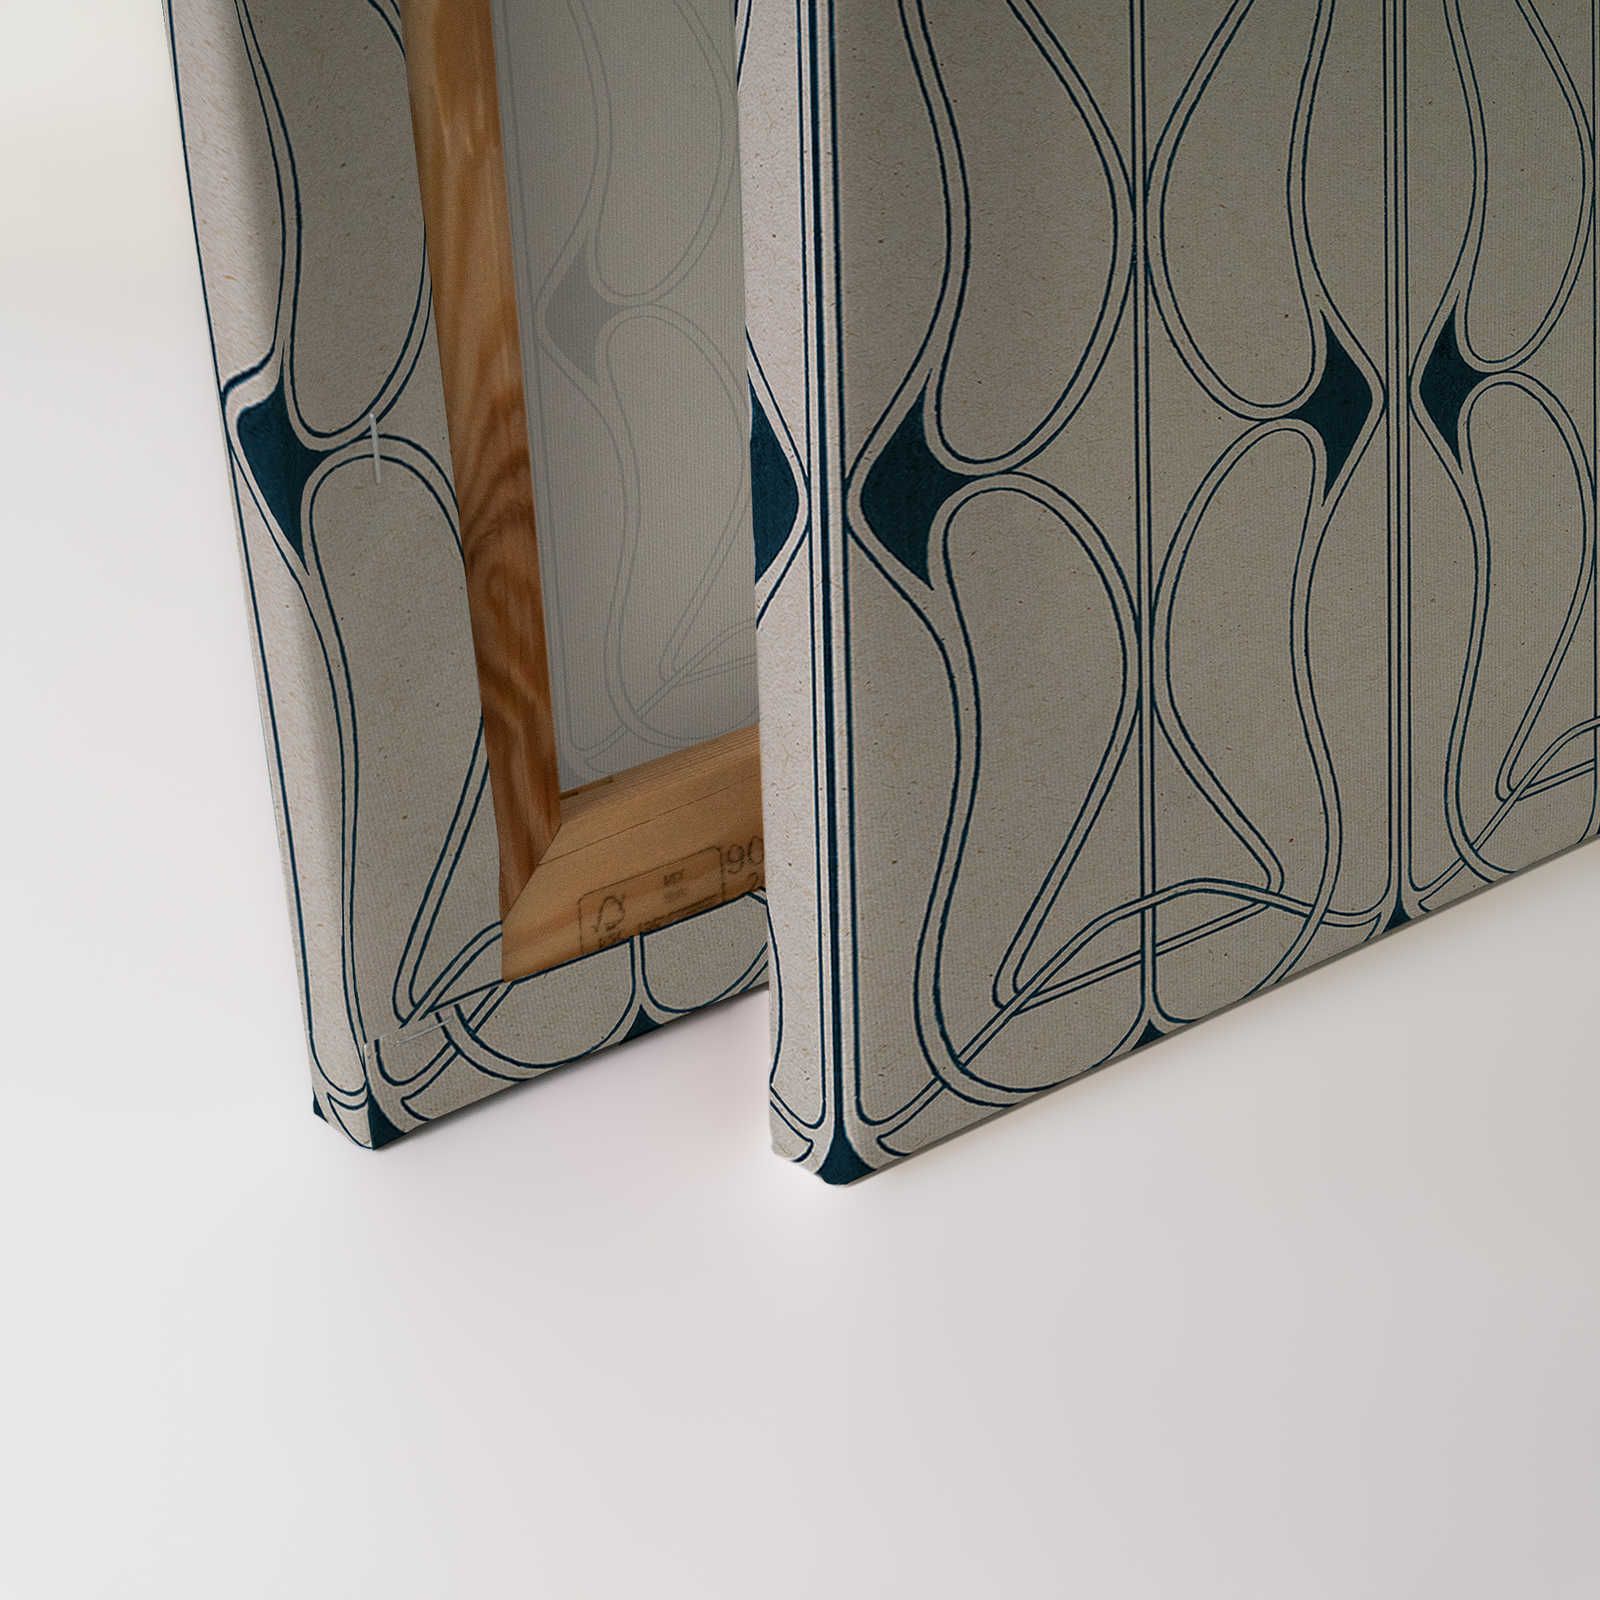             Astoria 1 - Leinwandbild Art Nouveau Muster Grau & Schwarzblau – 0,90 m x 0,60 m
        